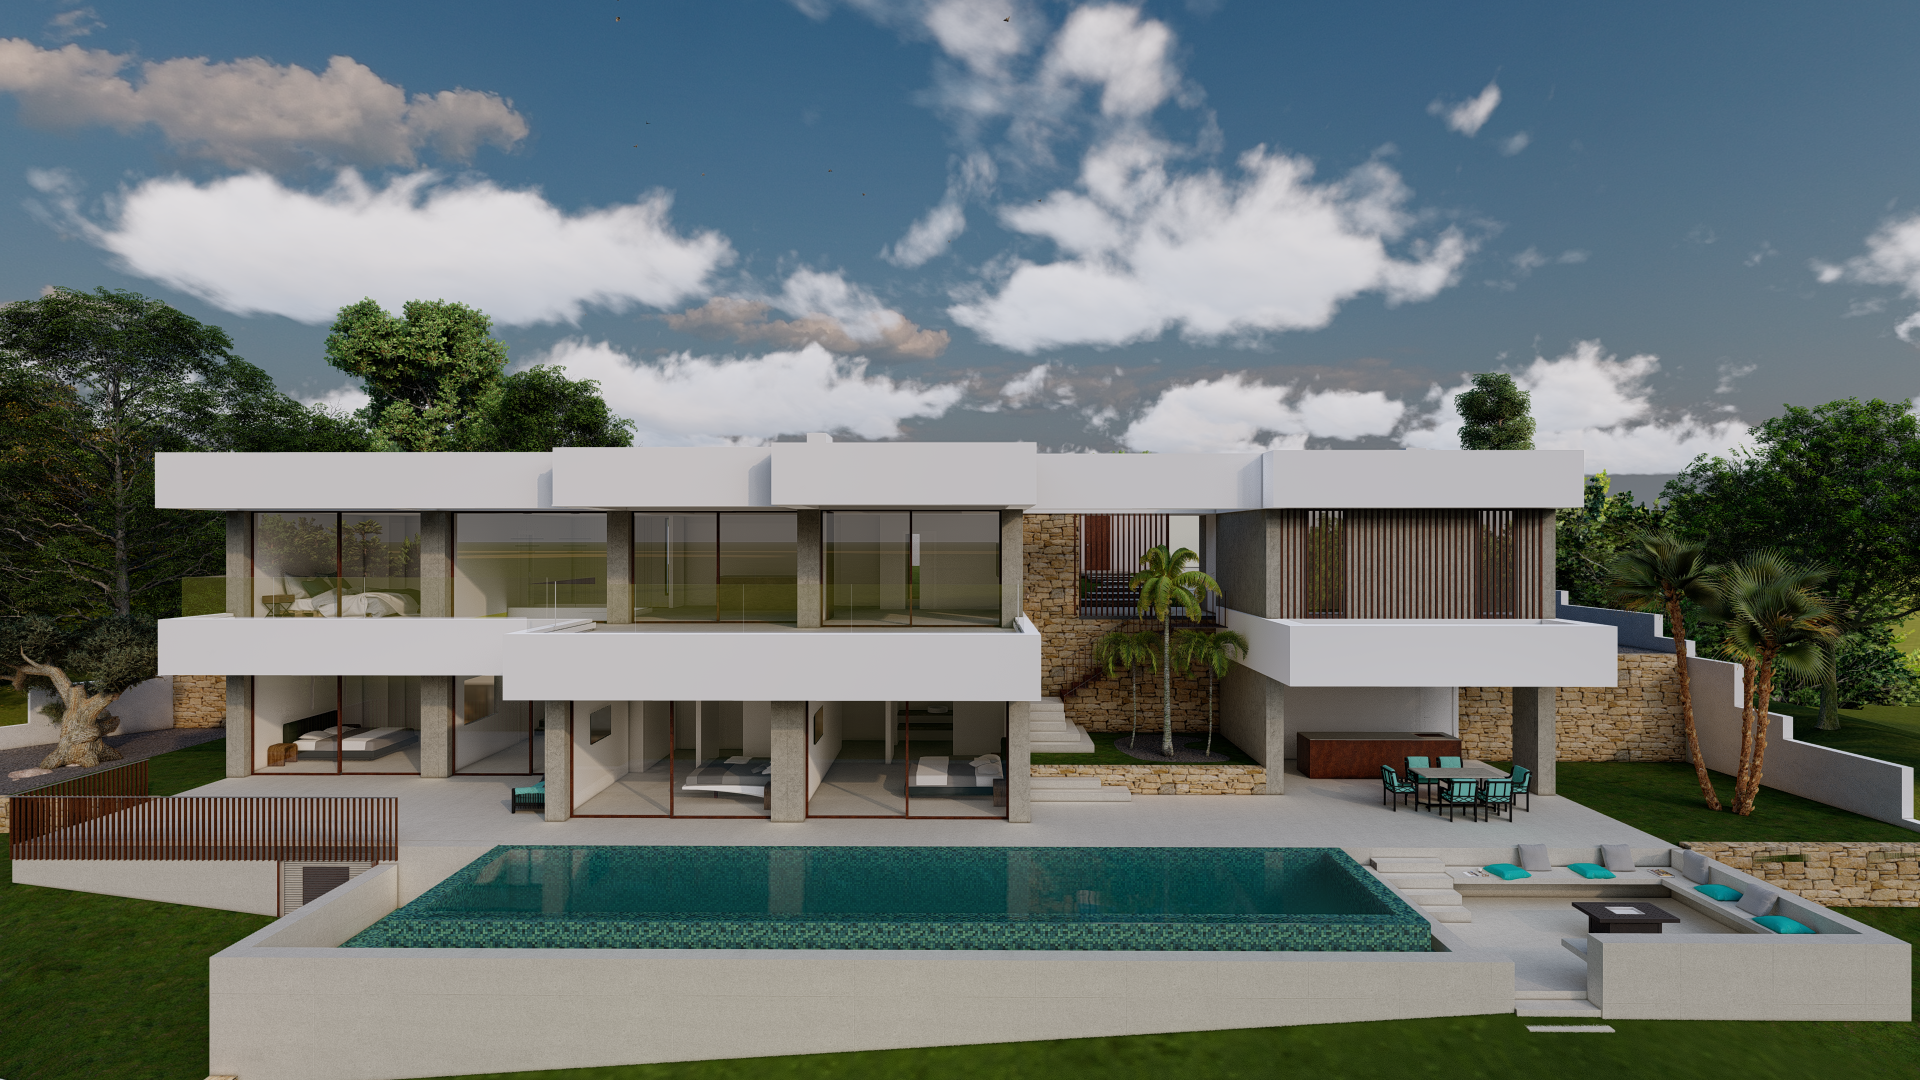 Altea Golf: Discover a New Villa with Contemporary Construction